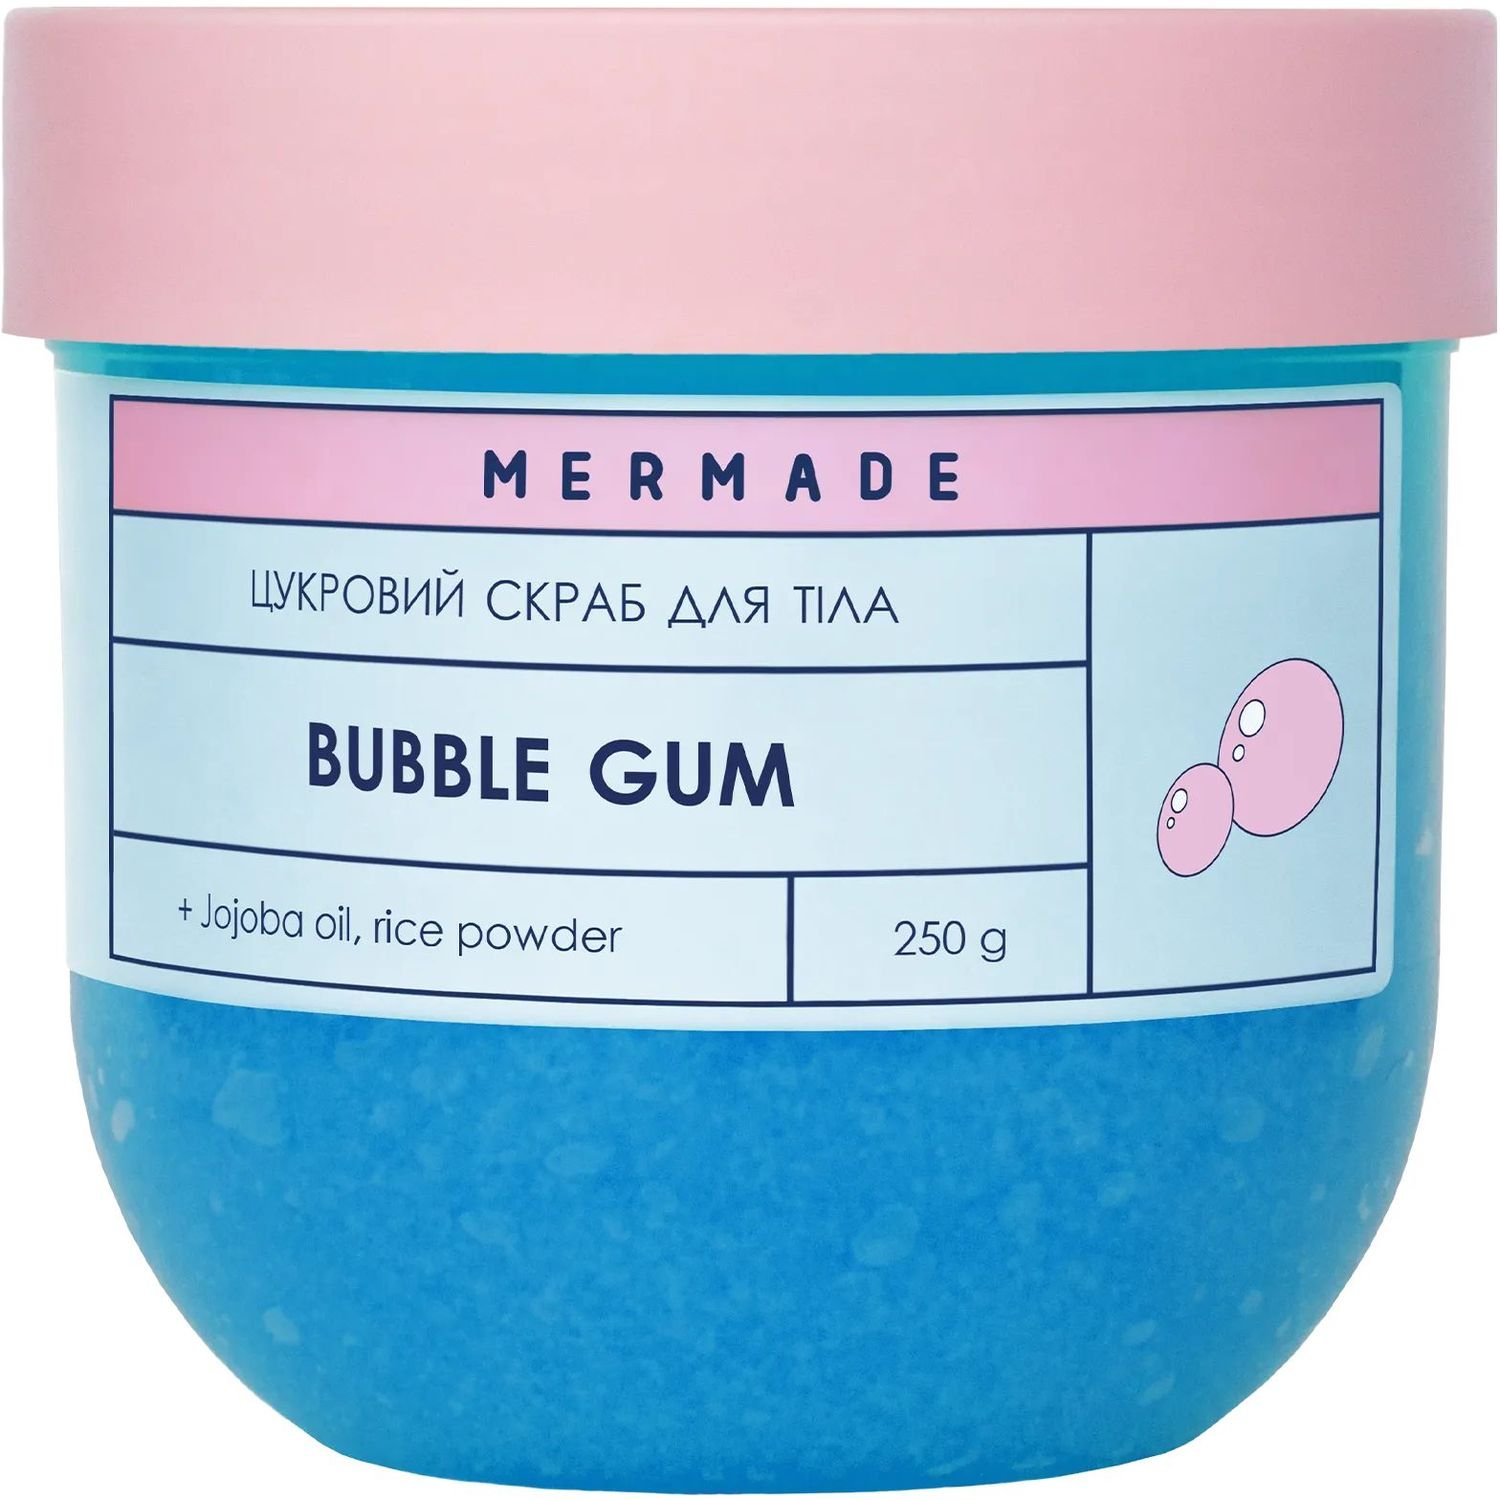 Цукровий скраб для тіла Mermade Bubble Gum 250 г - фото 1